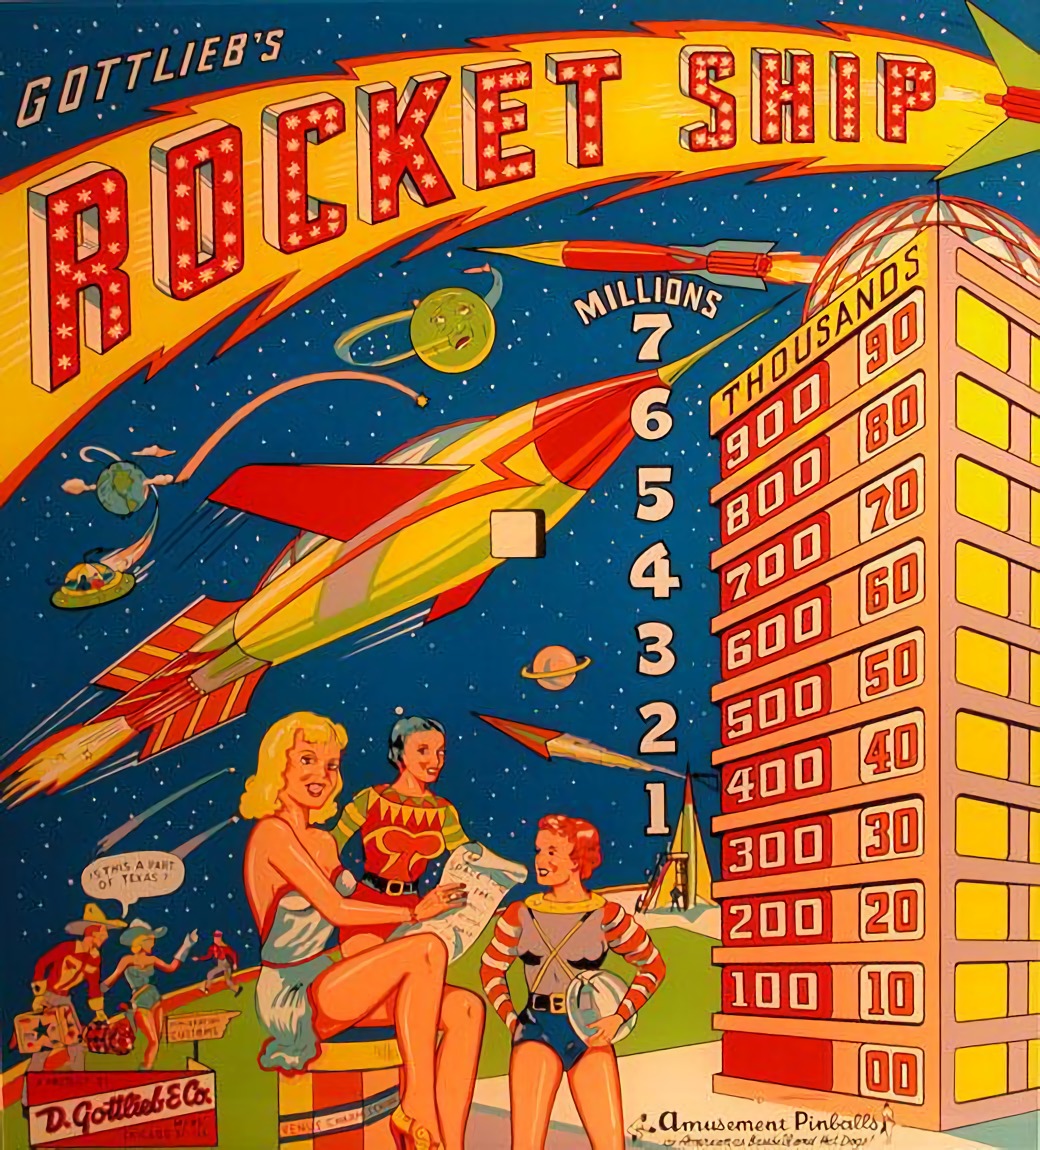 Rocket Ship (Gottlieb, 1958) Backglass